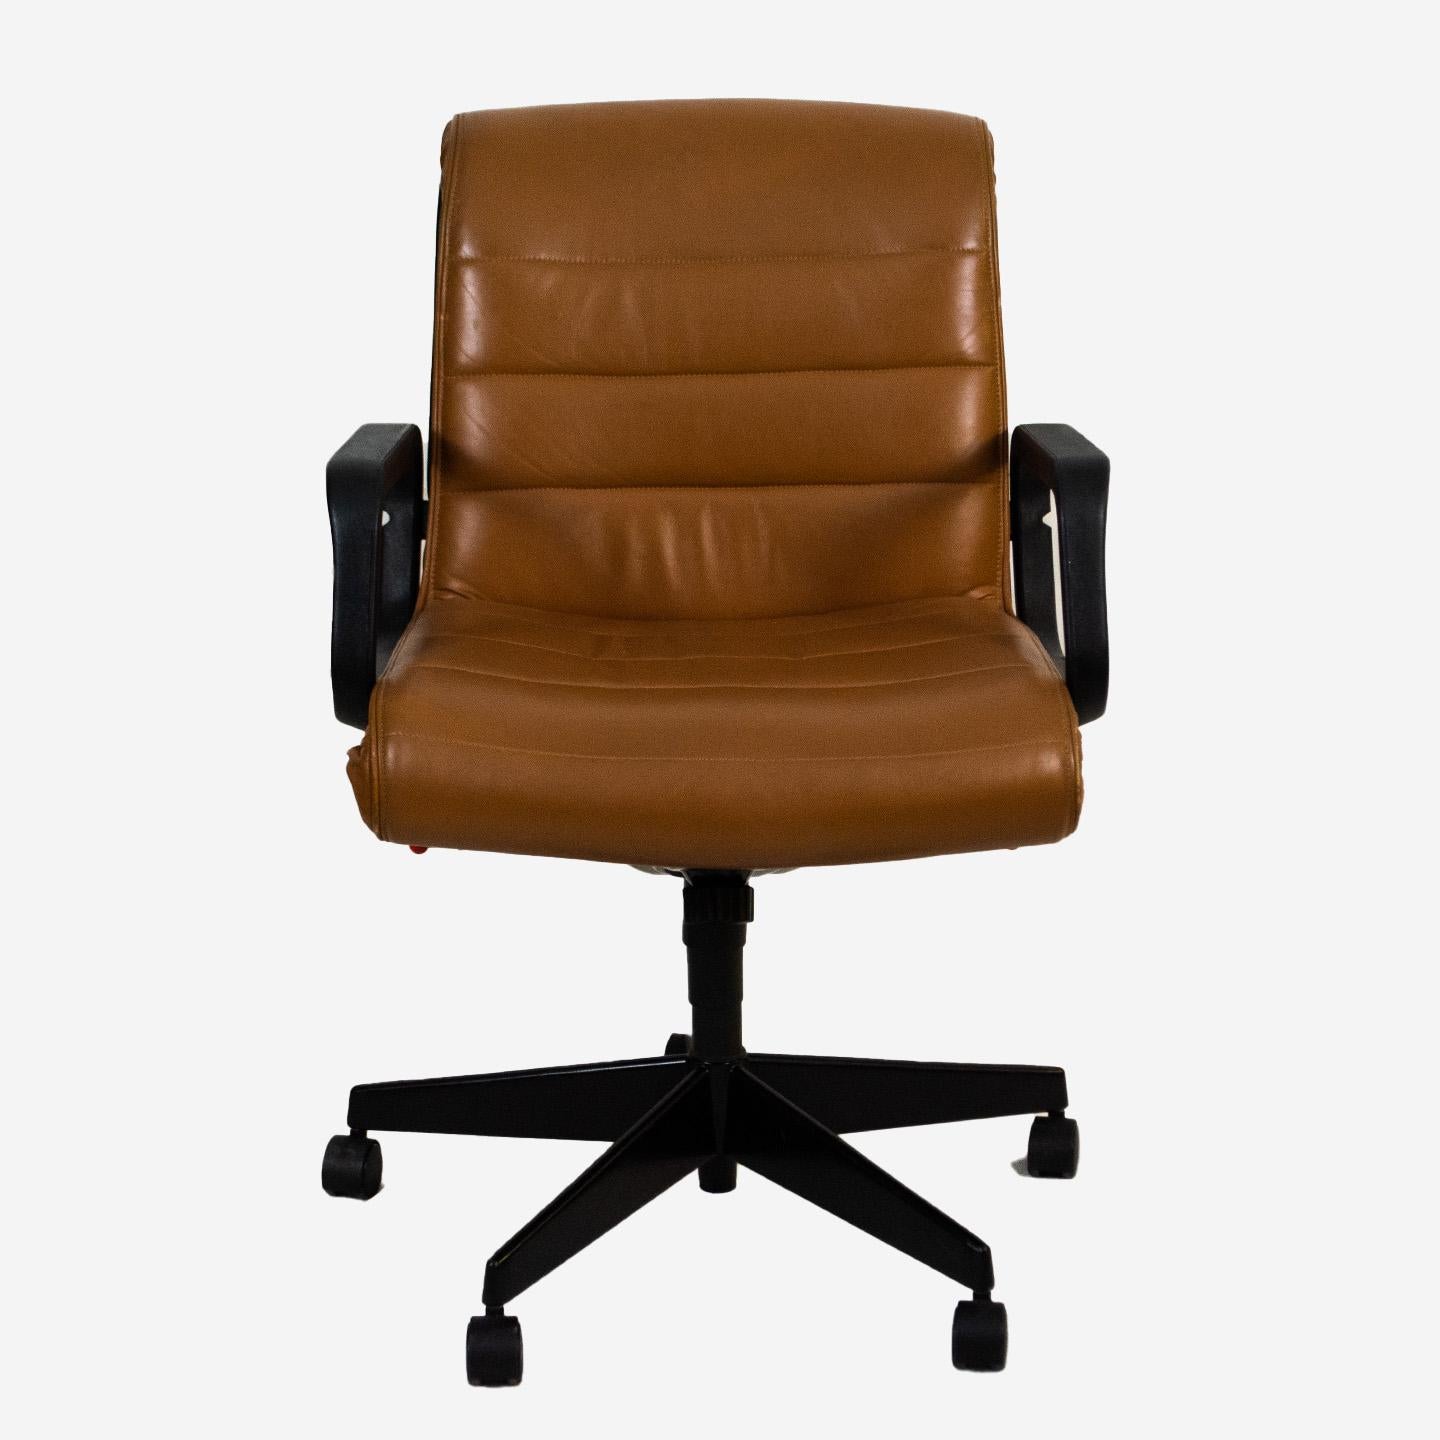 Le fauteuil de bureau Executive, conçu par Richard Sapper pour Knoll, est doté d'un piètement à cinq branches et revêtu d'un cuir fin de couleur havane. La marque de fabrique de ce beau siège de bureau réside dans ses caractéristiques ergonomiques